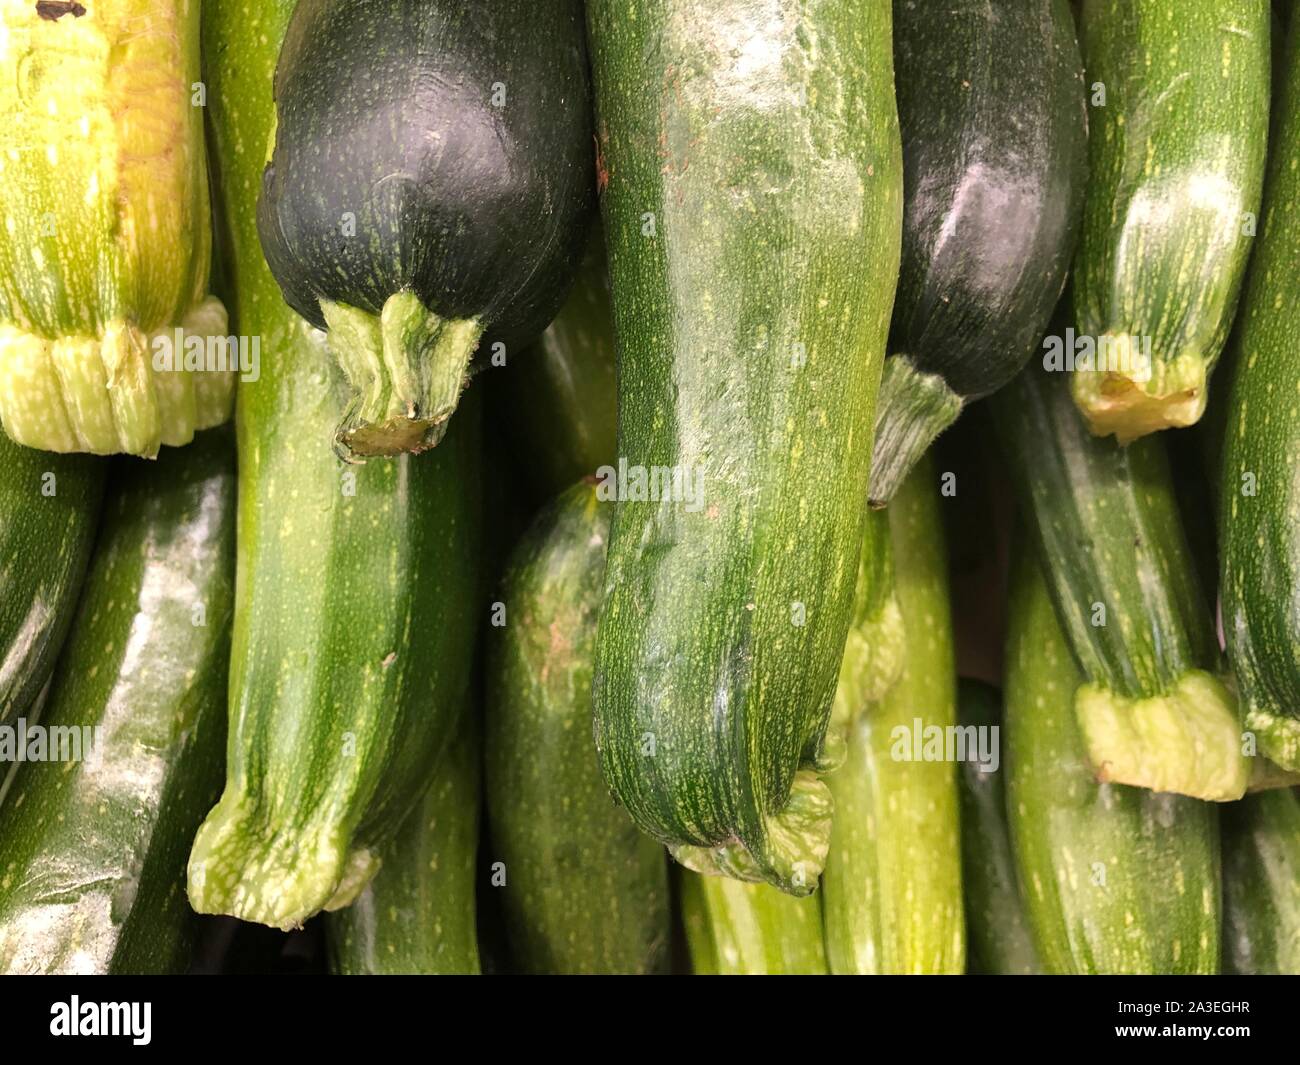 Zucchine verde raccolto sano, nutriente ingredienti vegetali per le ricette di cucina, la dieta alimentare che è fresco e raw Foto Stock